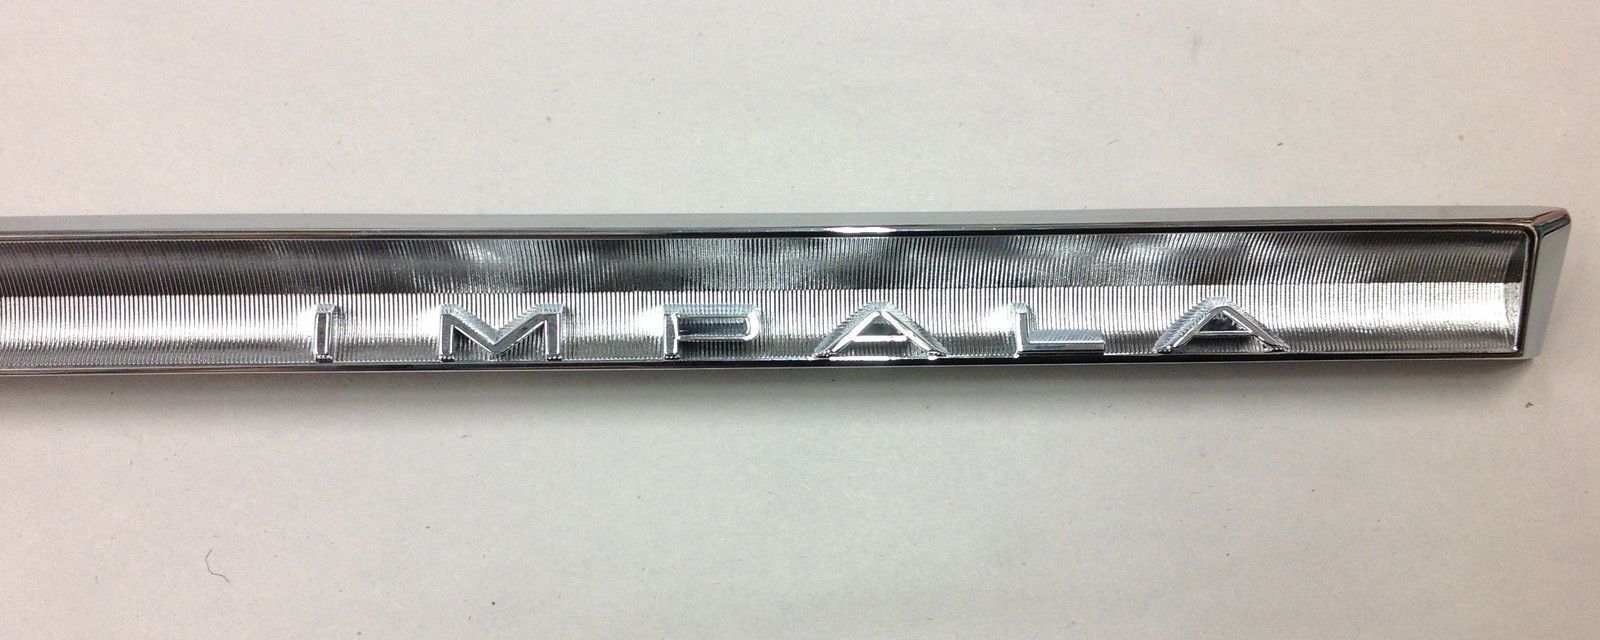 64 Chevy Impala Dash Glove Box Nameplate Chrome Emblem ...